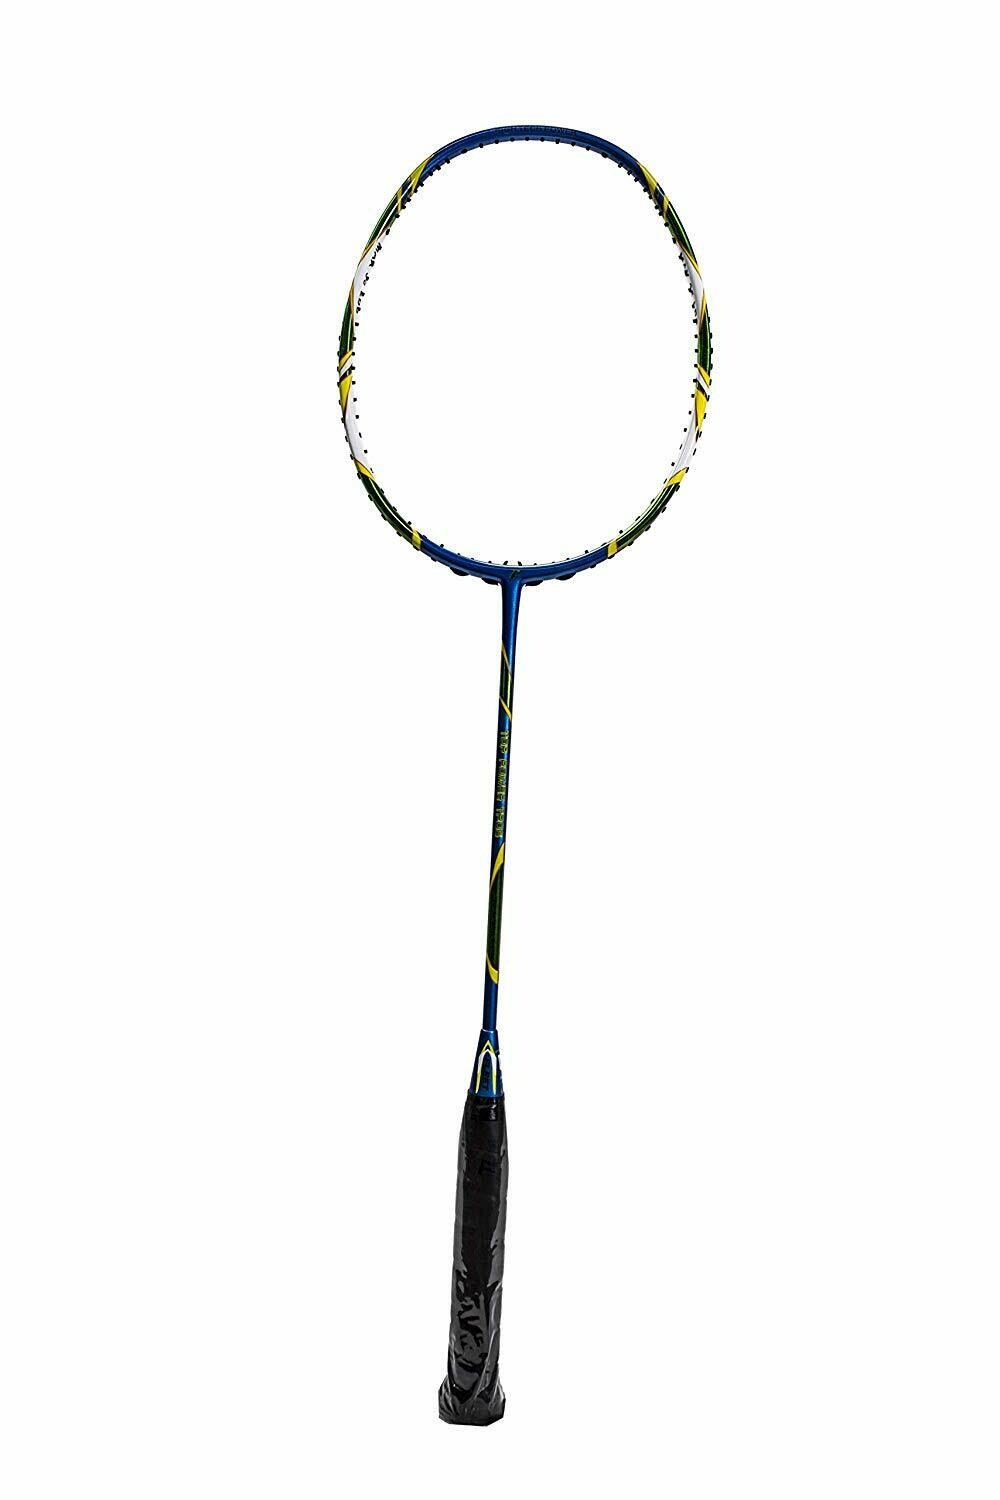 Fleet Top Power TP06 Badminton Racket